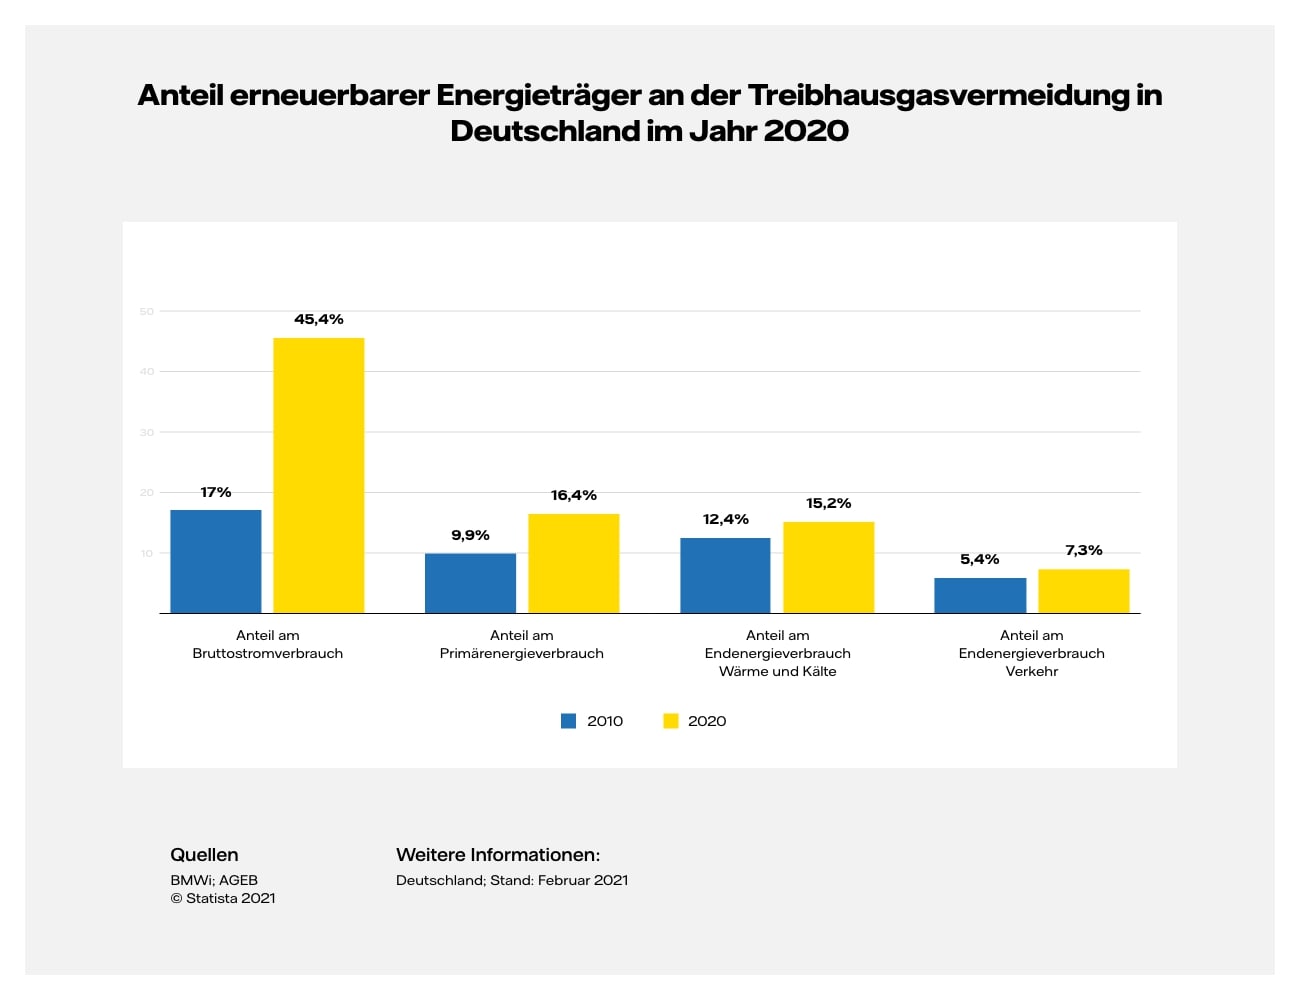 Grafik Desktop: Anteil Erneuerbarer Energien an der Energieversorgung in Deutschland nach Bereichen im Jahresvergleich 2010 und 2020